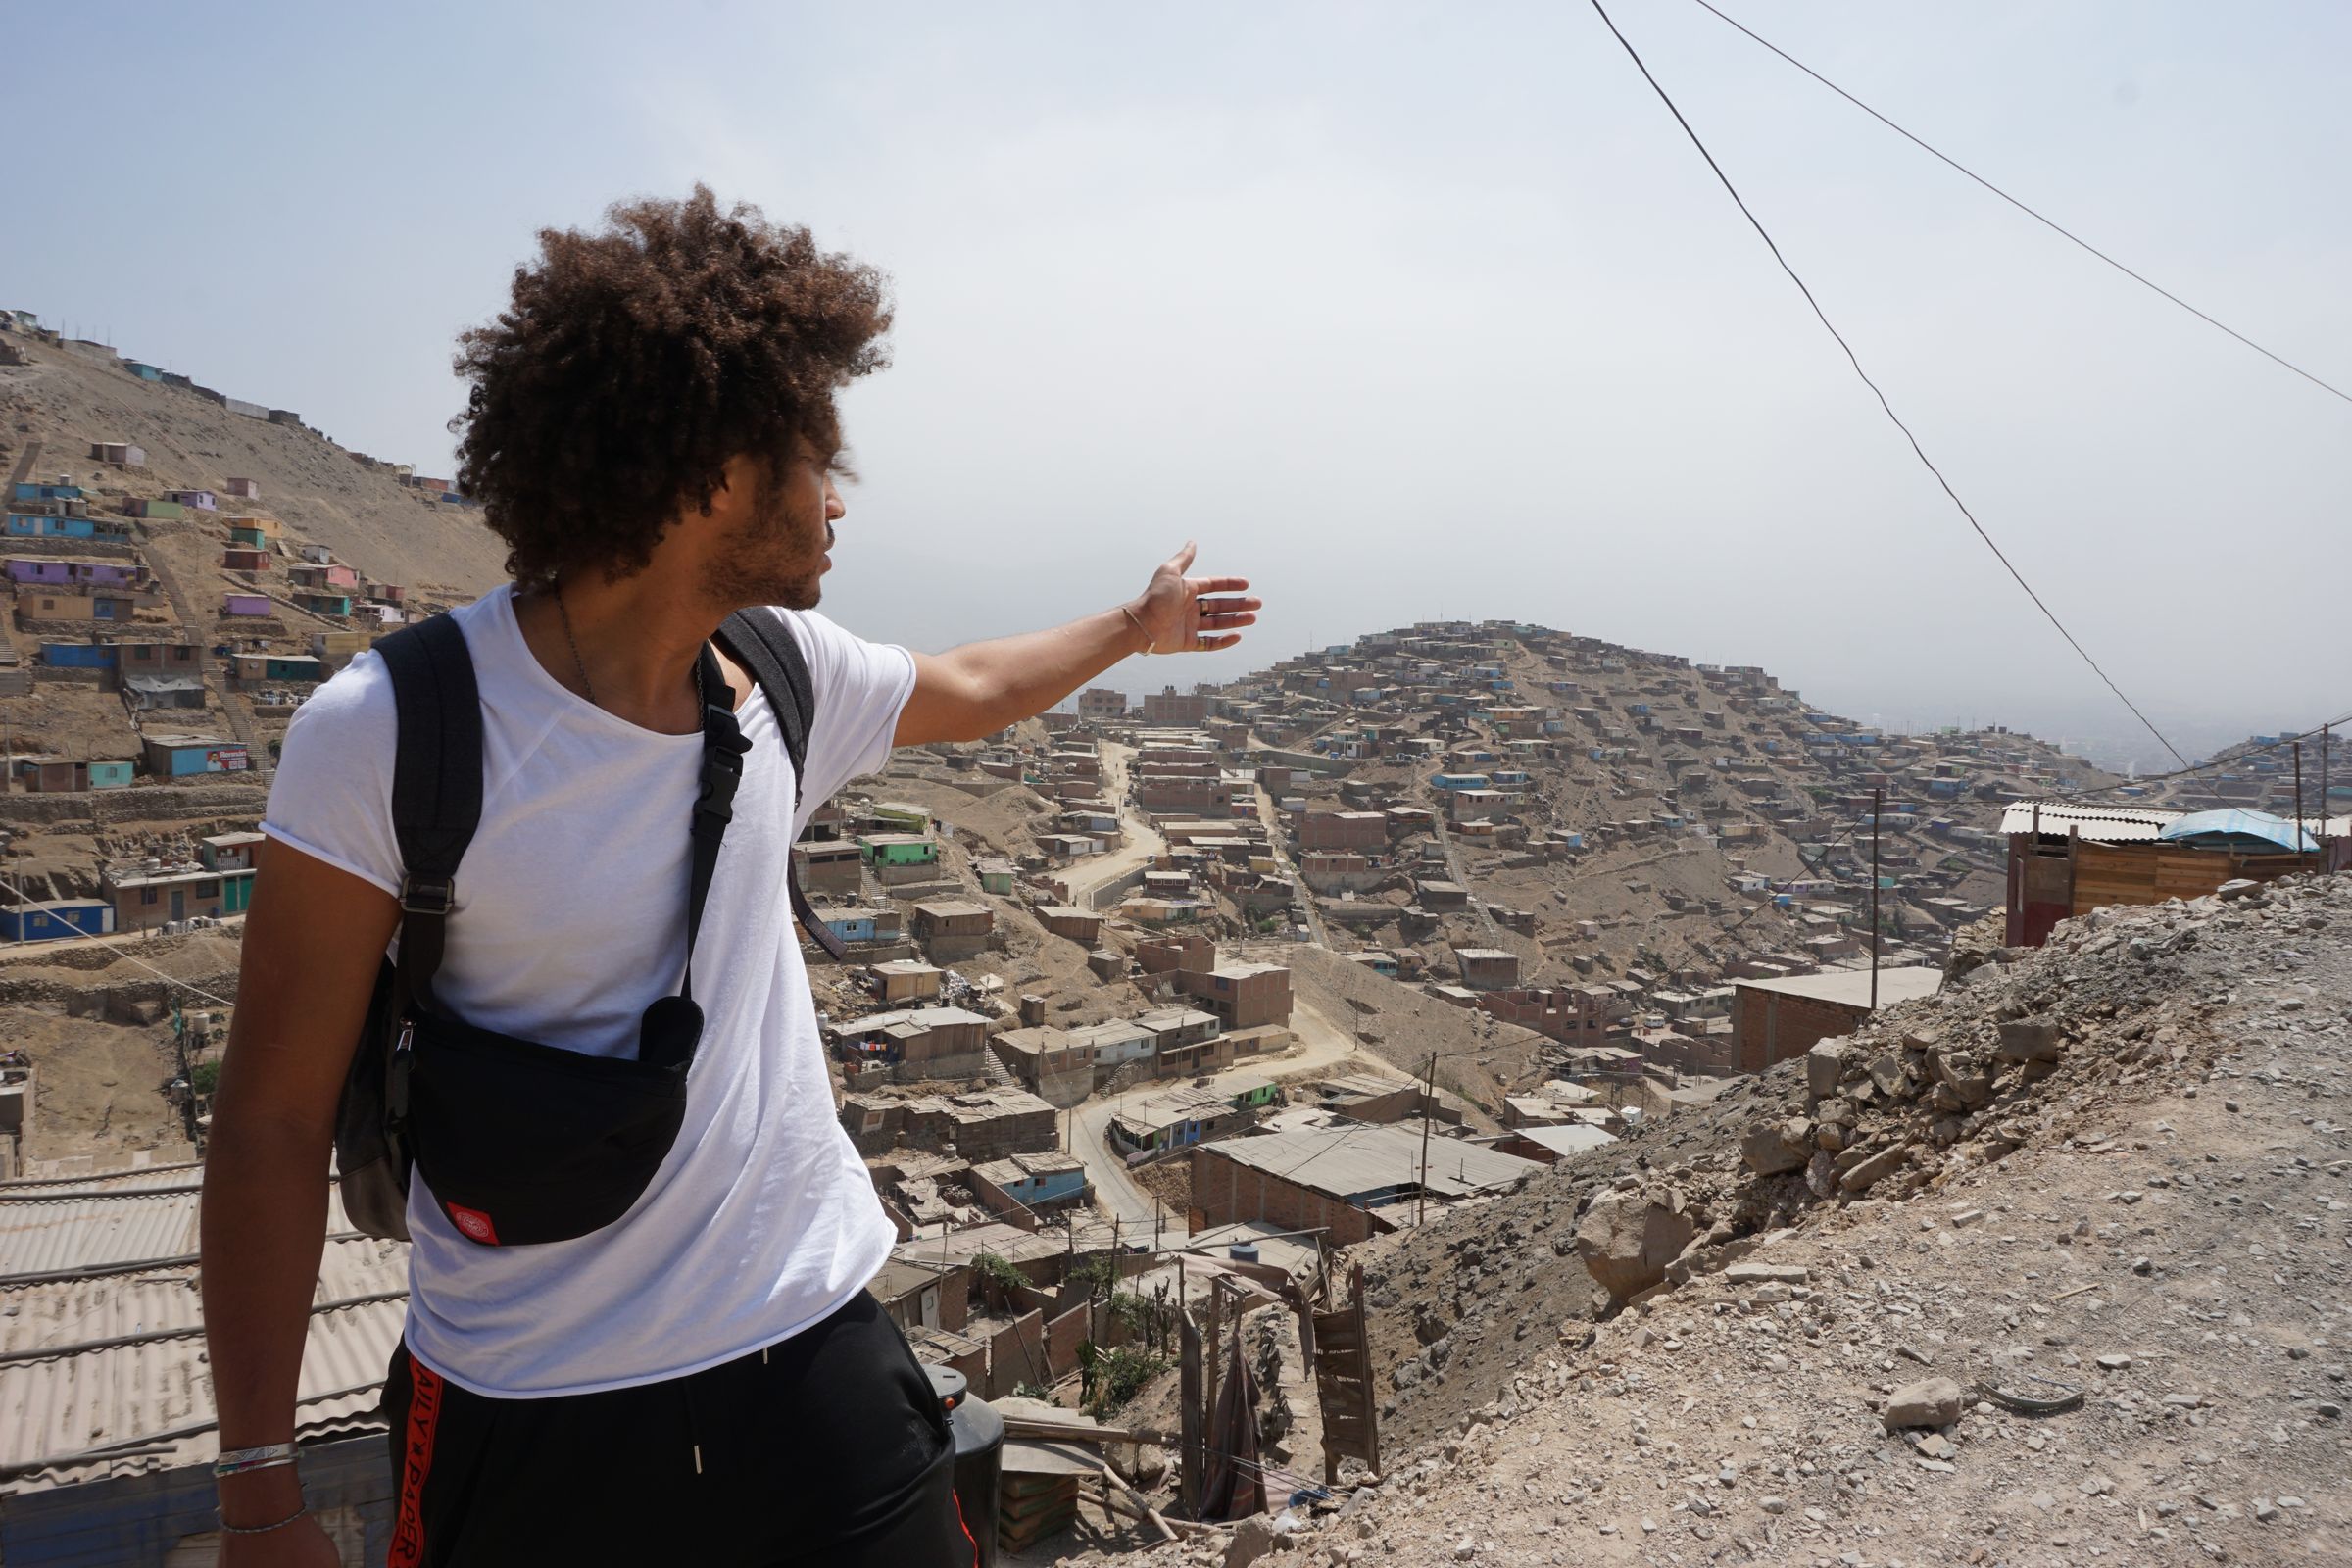 Dillan macht eine zeigende Geste in einer peruanischen Siedlung